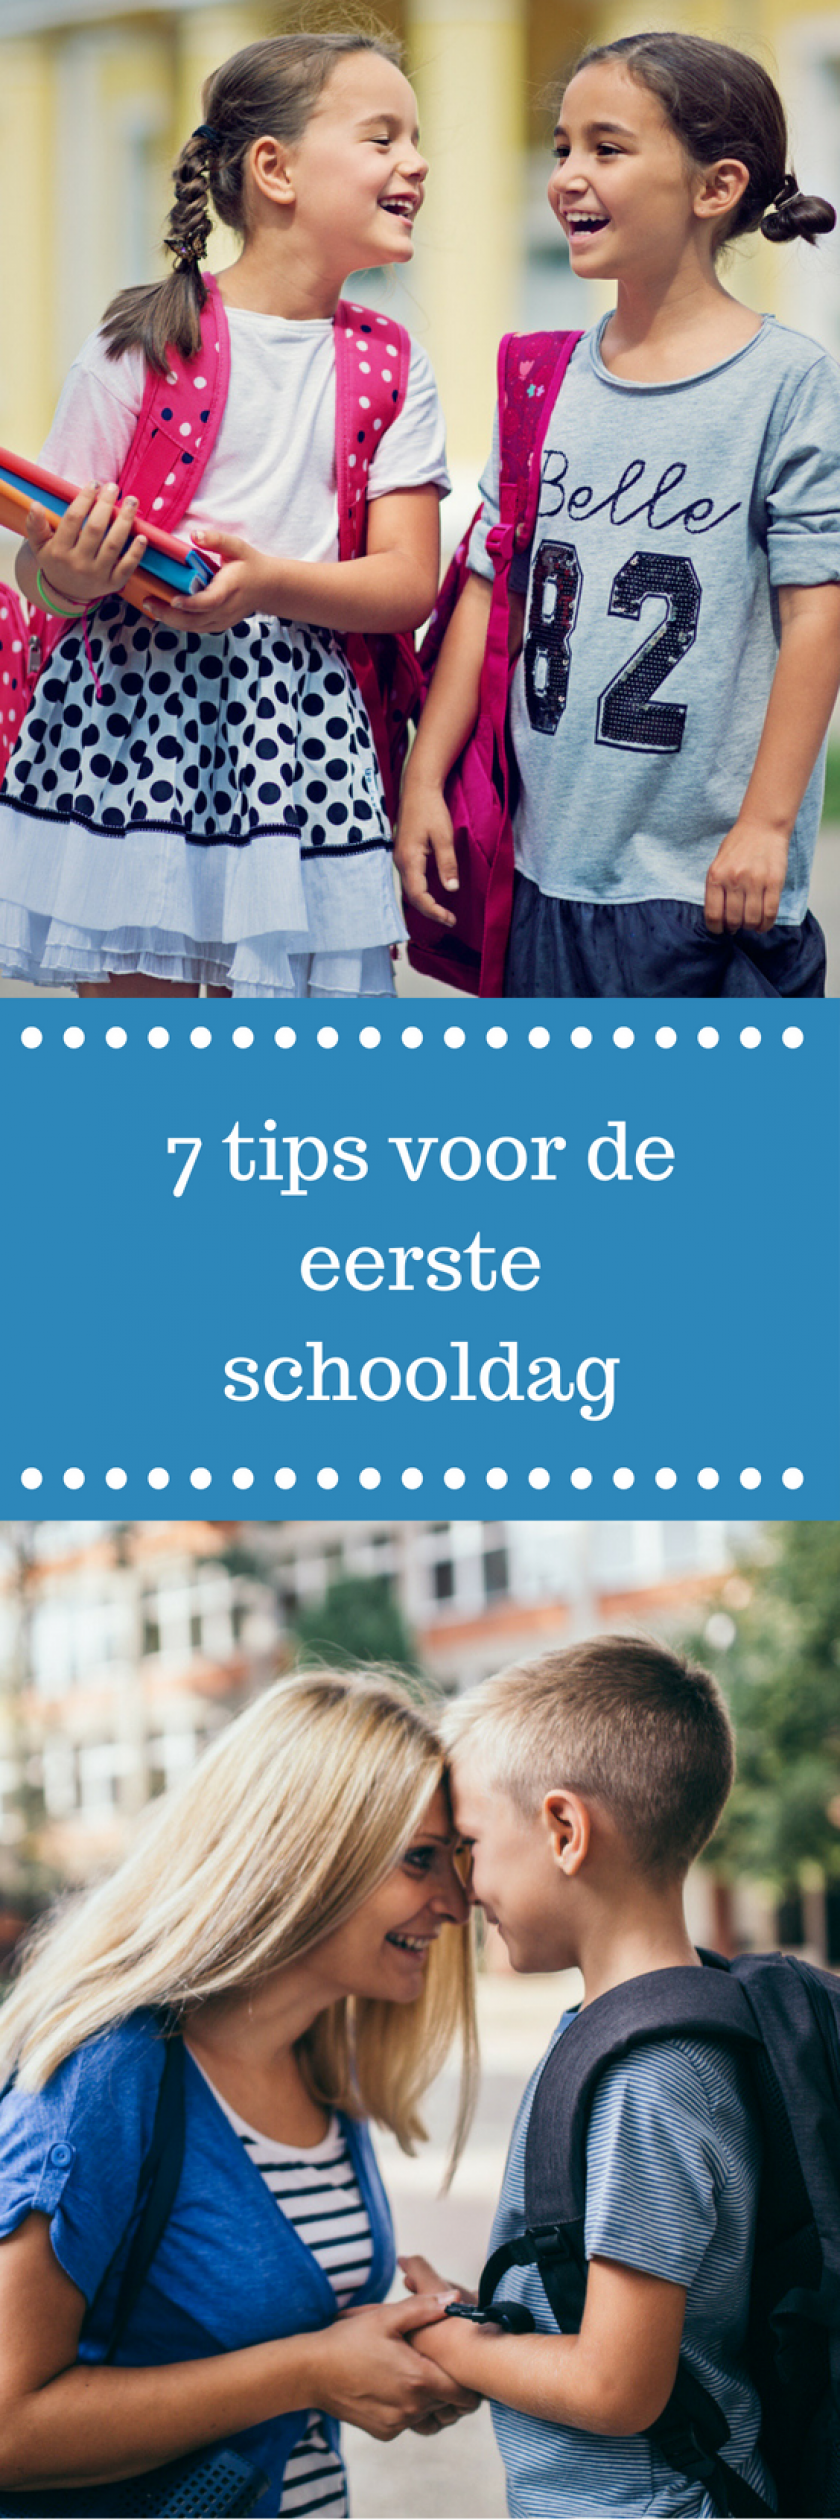 7 tips voor de eerste schooldag